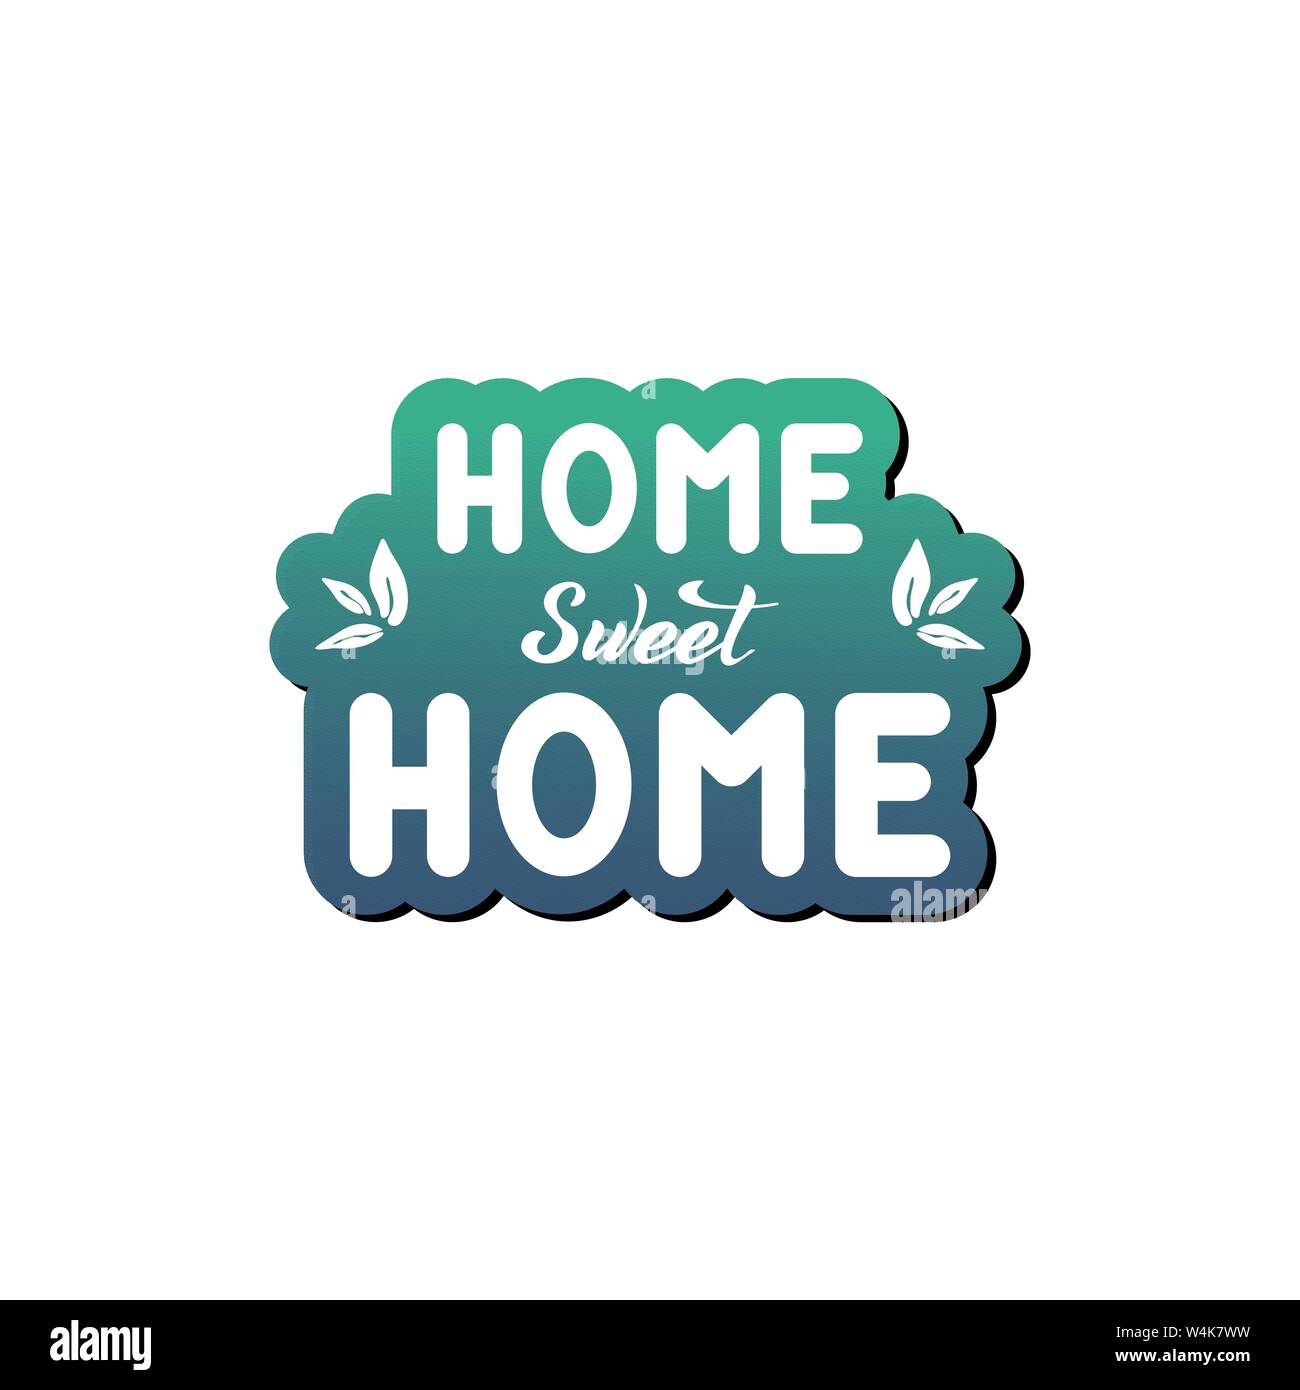 Illustrazione Vettoriale con scritte a mano - Home sweet Home. Green gradiente dello sfondo. Parola isolata. Per il sito web, cafe, shop, interior design Illustrazione Vettoriale